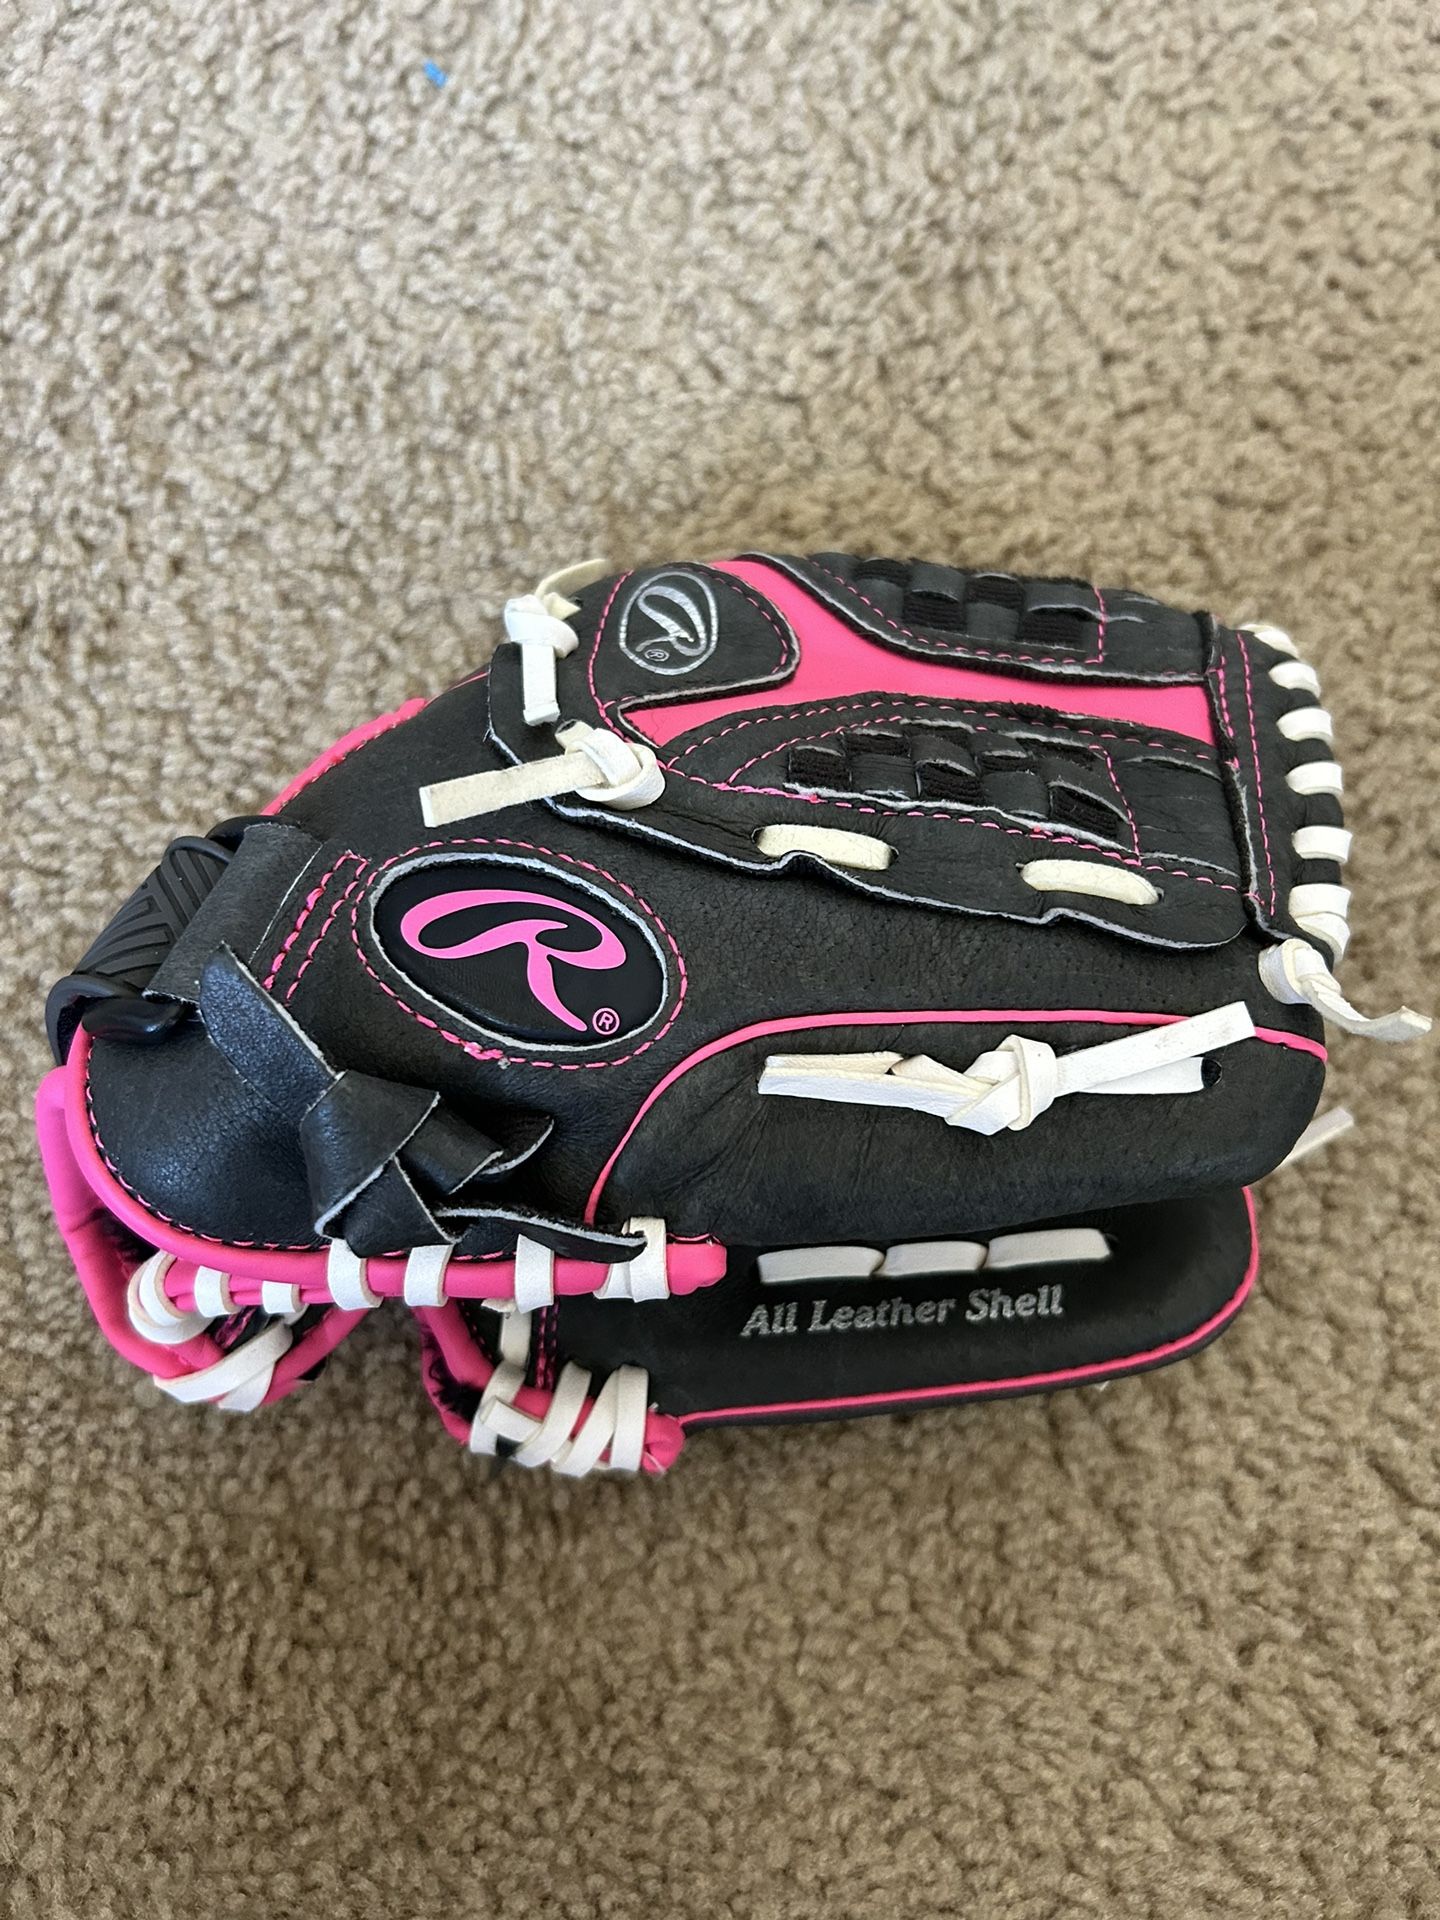 Rawlings 10.5” Baseball Glove